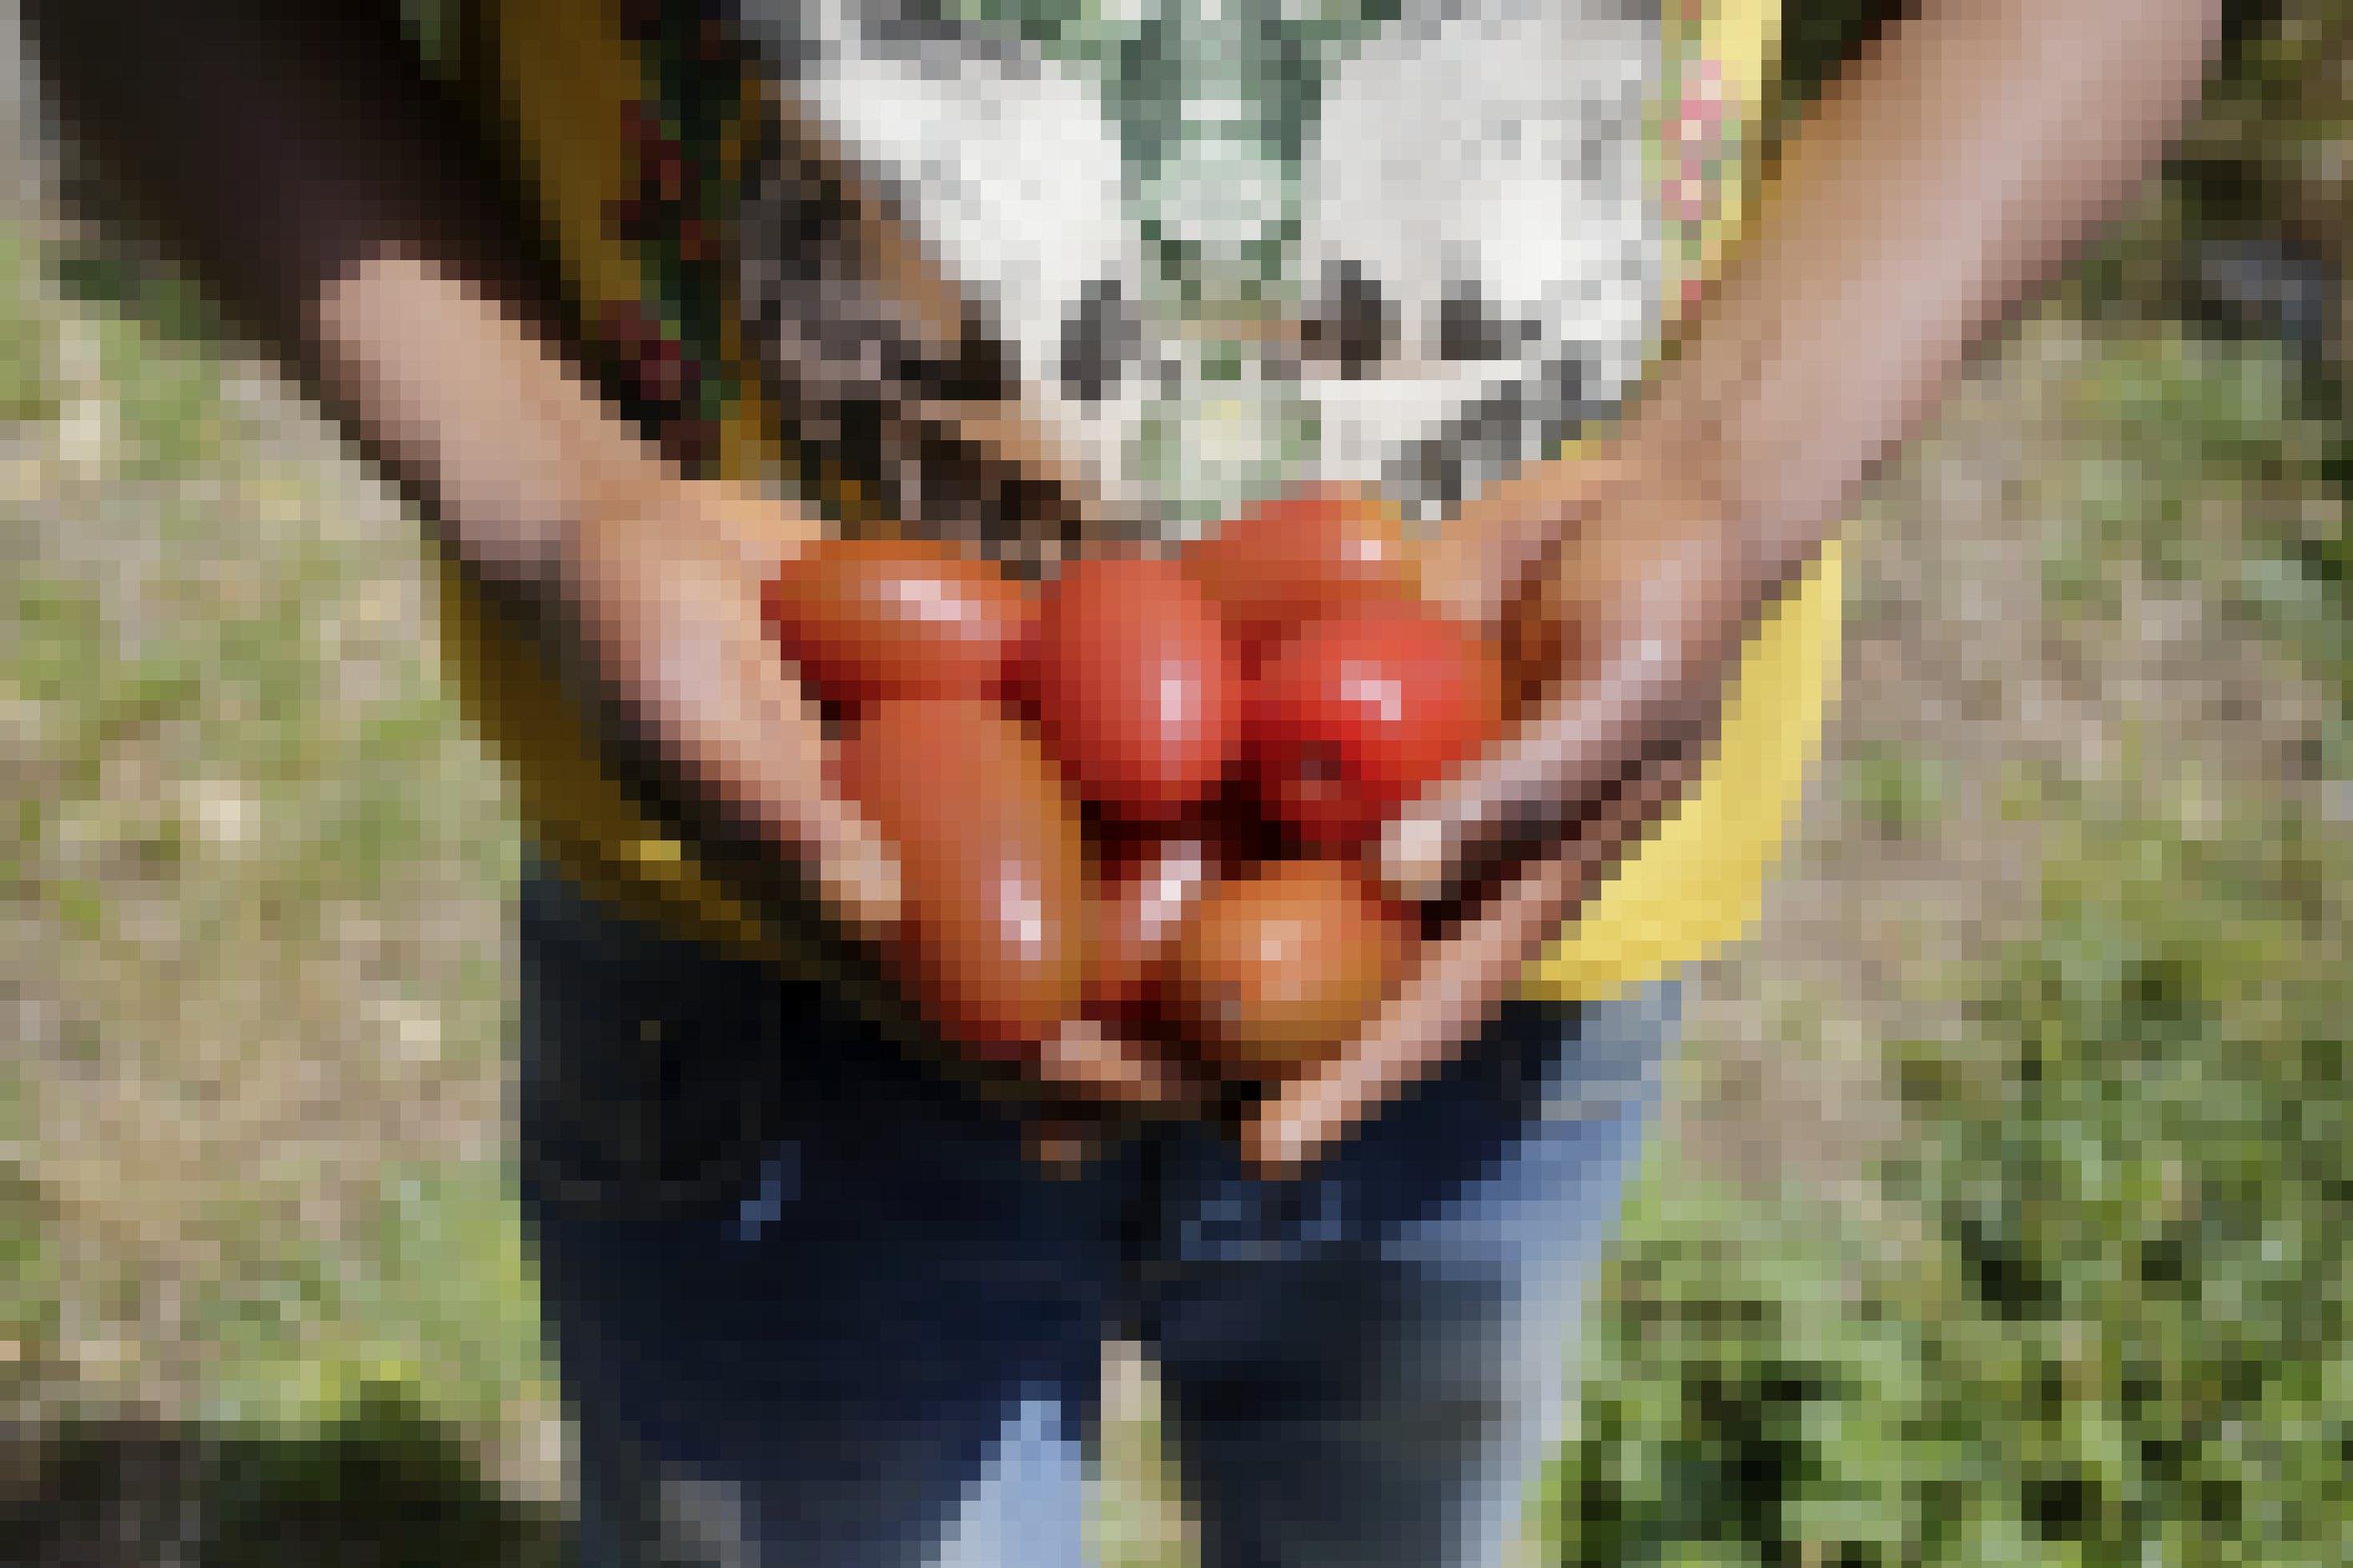 Man sieht die Hände eines dunkelhäutigen Mannes, darin etliche reife Tomaten.